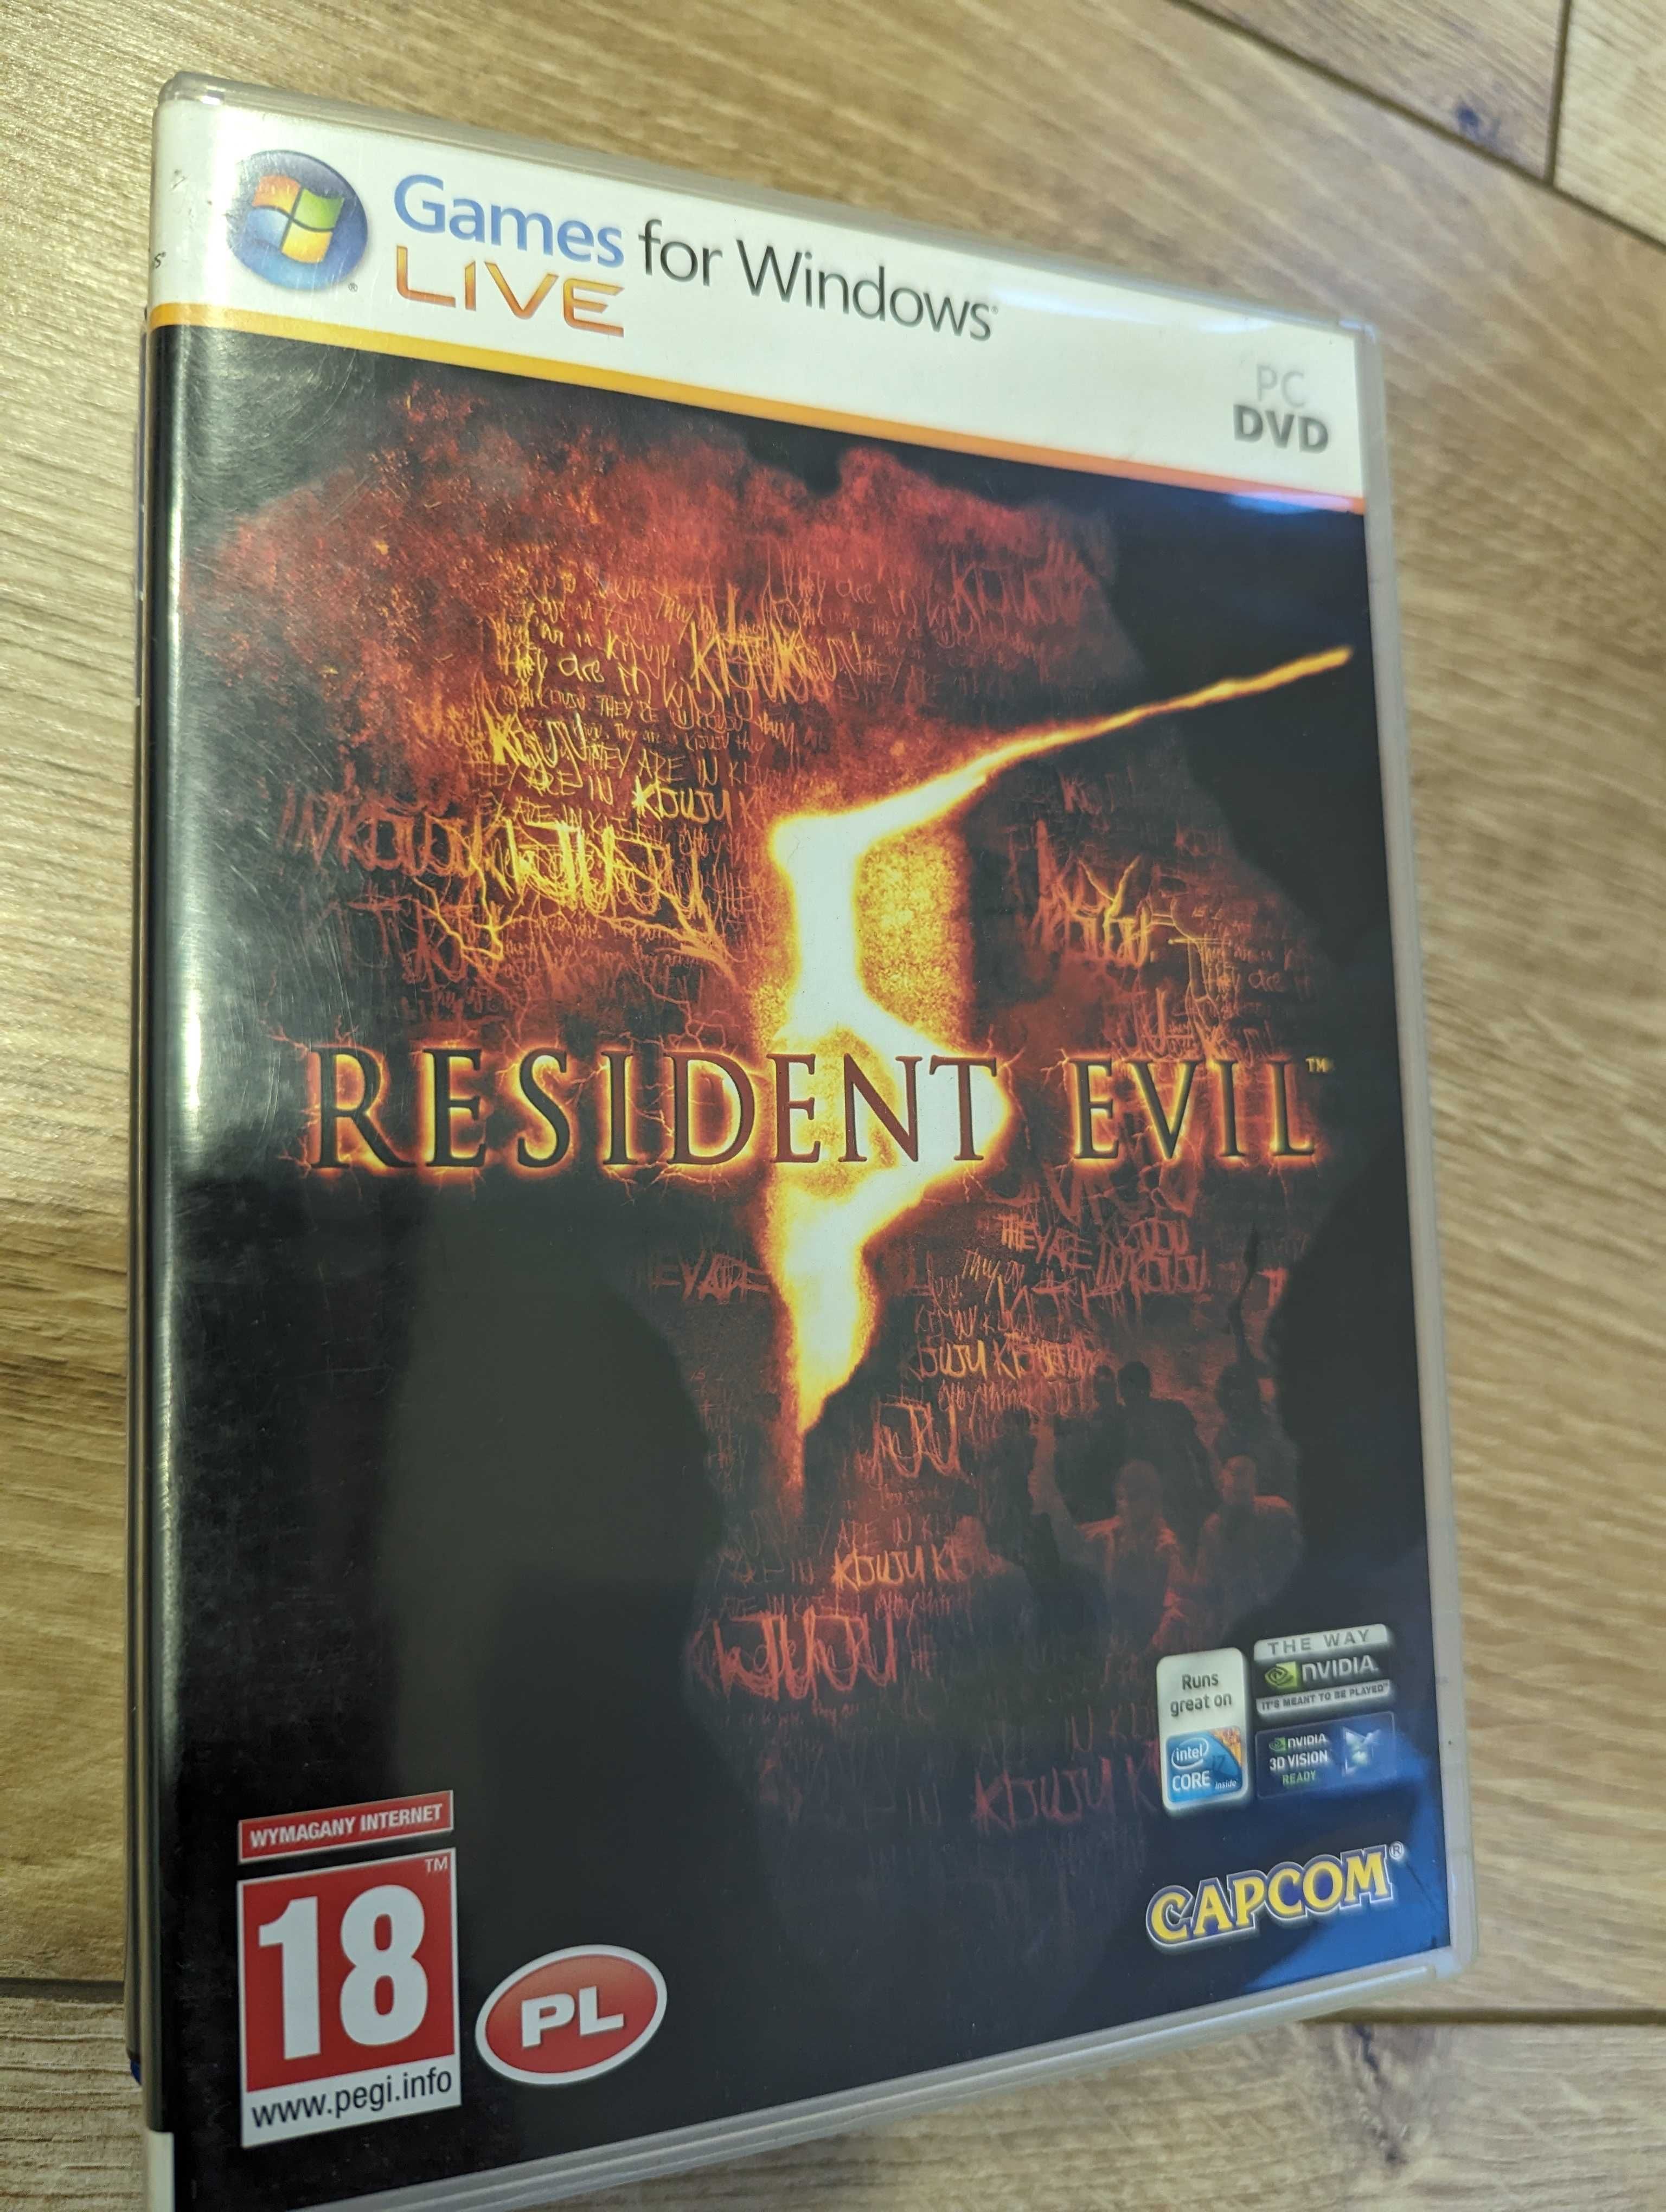 Resident Evil 5 PC